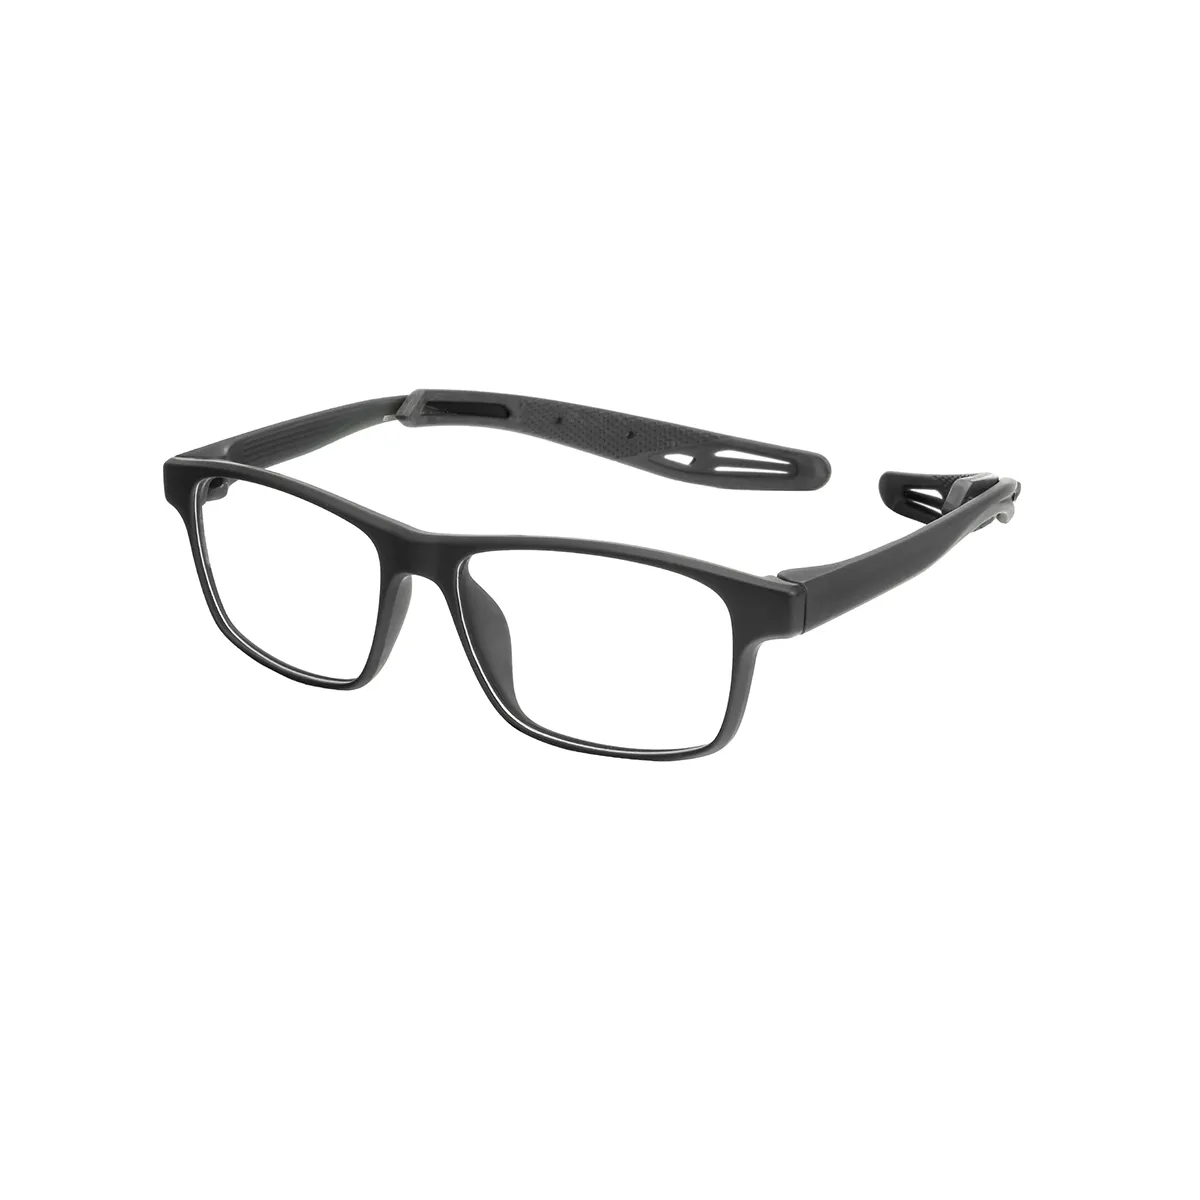 Rankin - Rectangle Black Glasses for Men